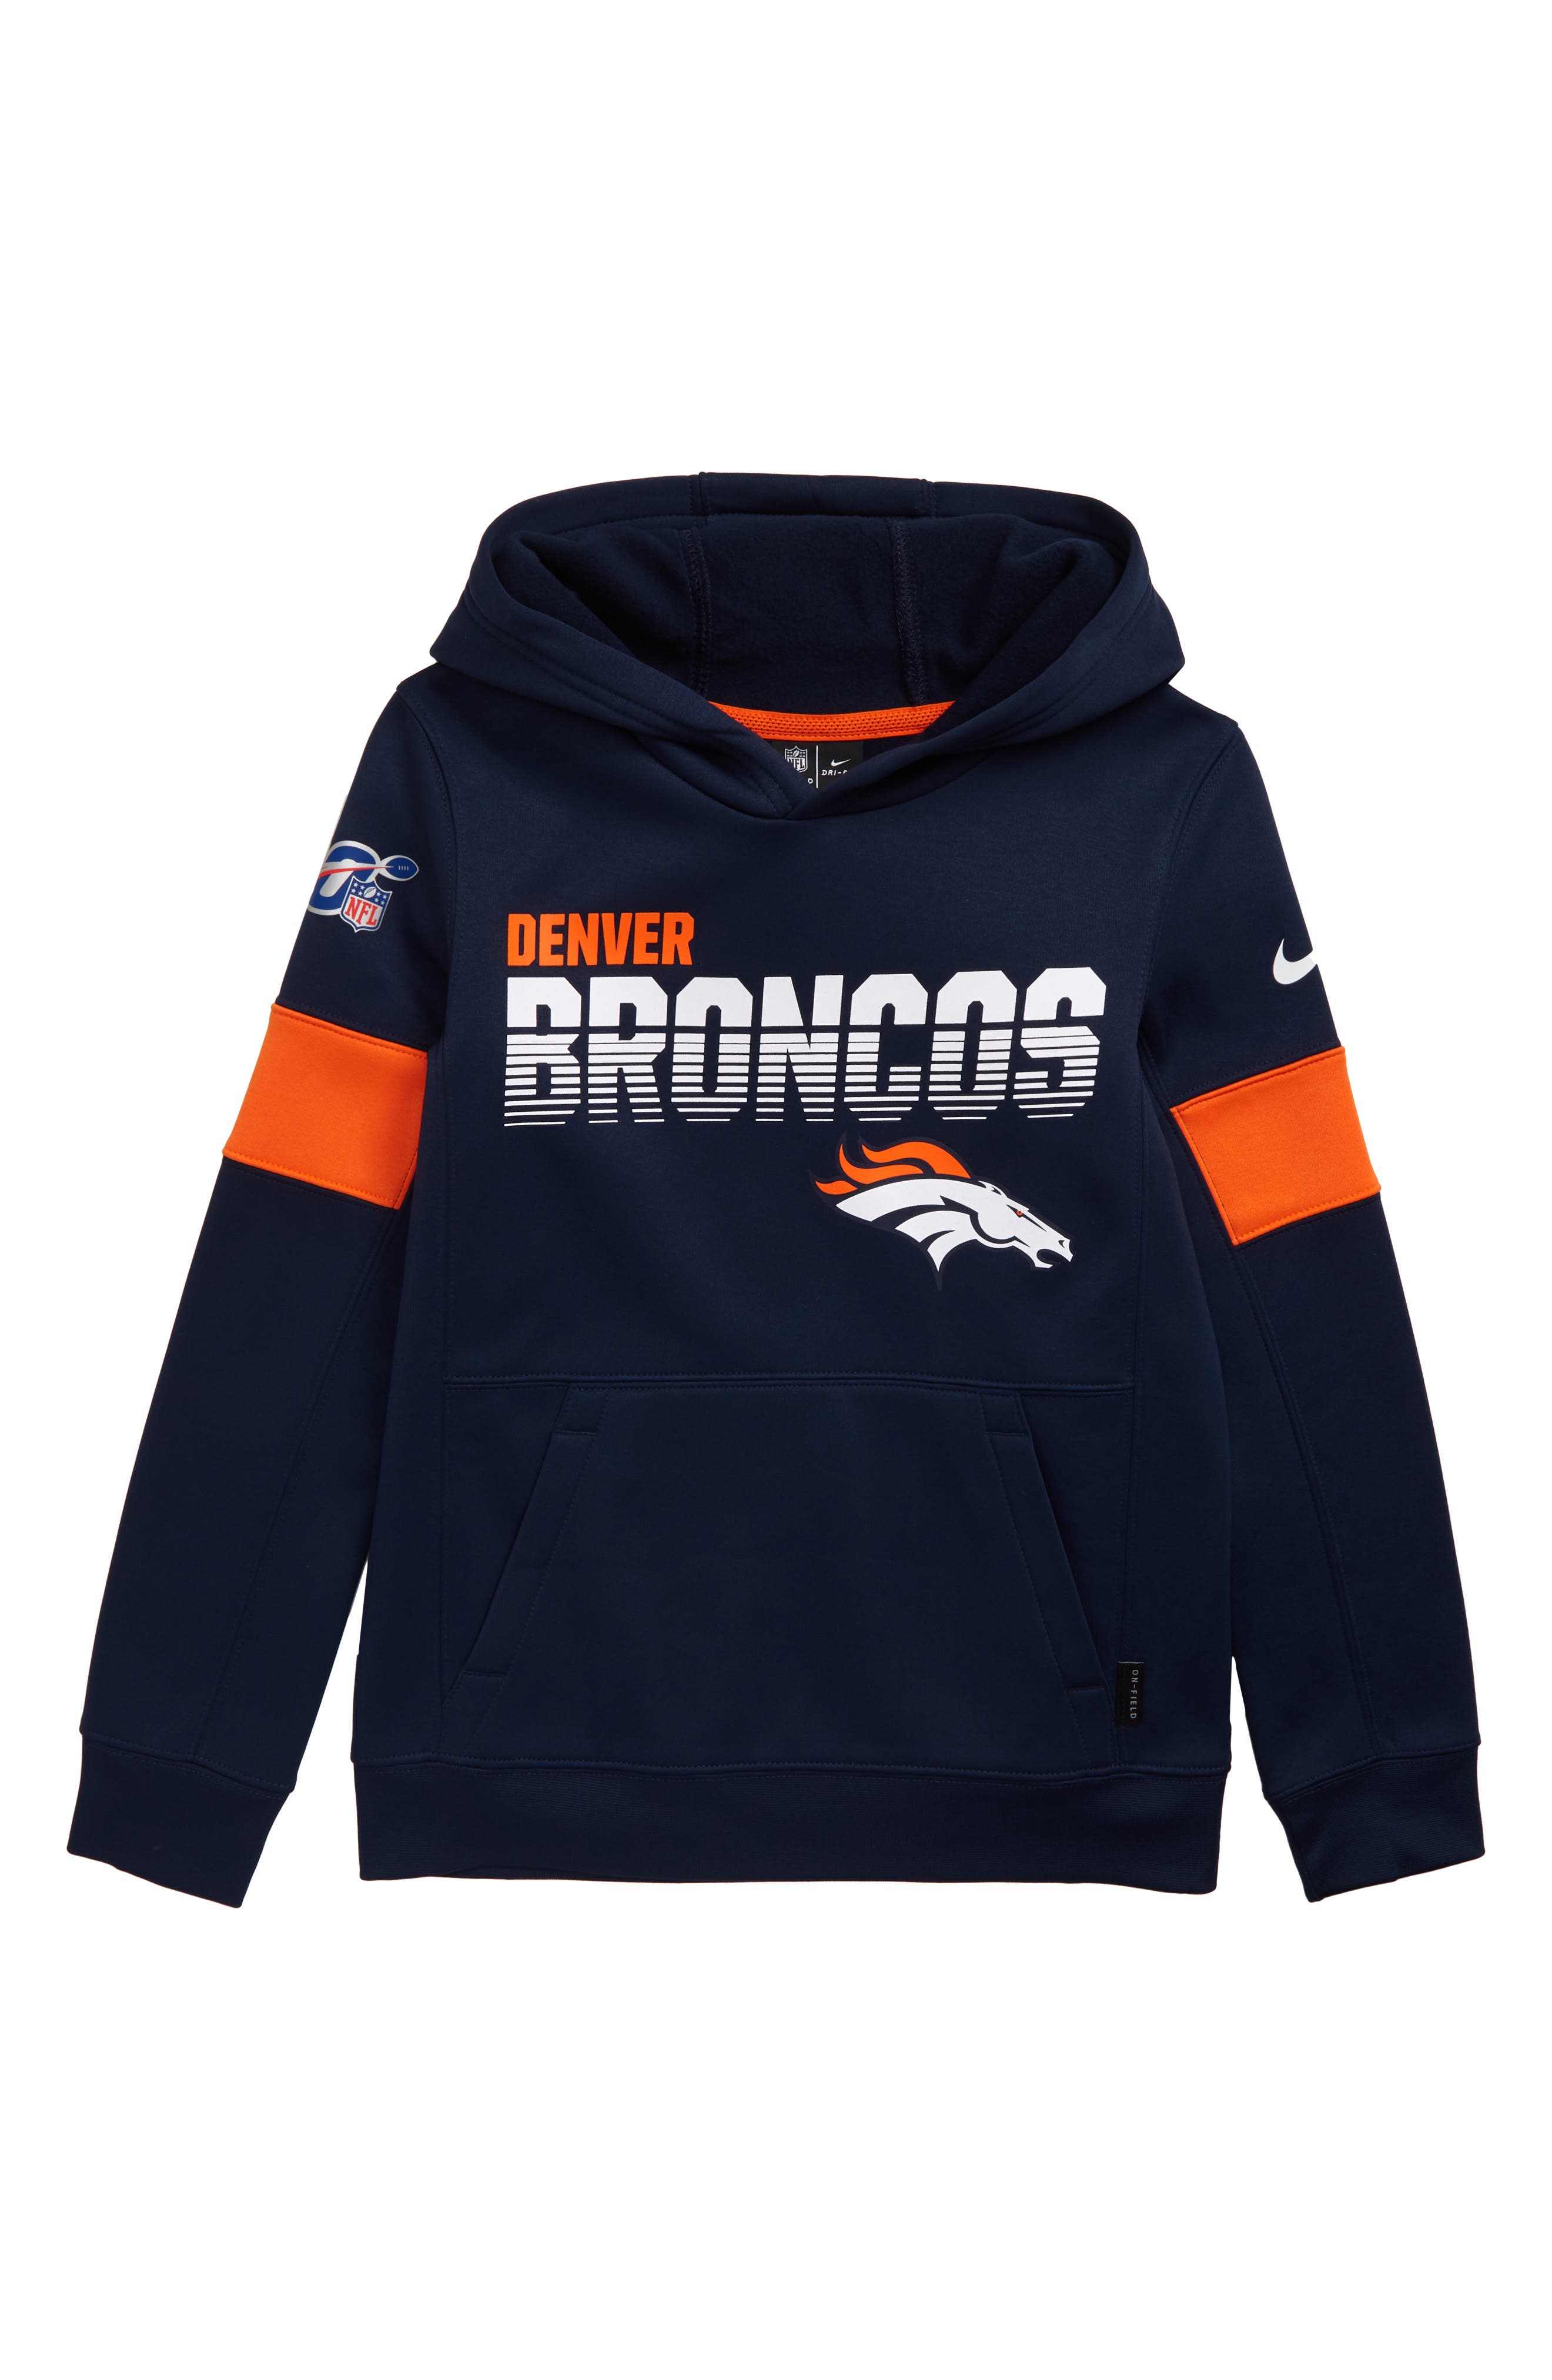 Denver Broncos kids sweatshirts,www 